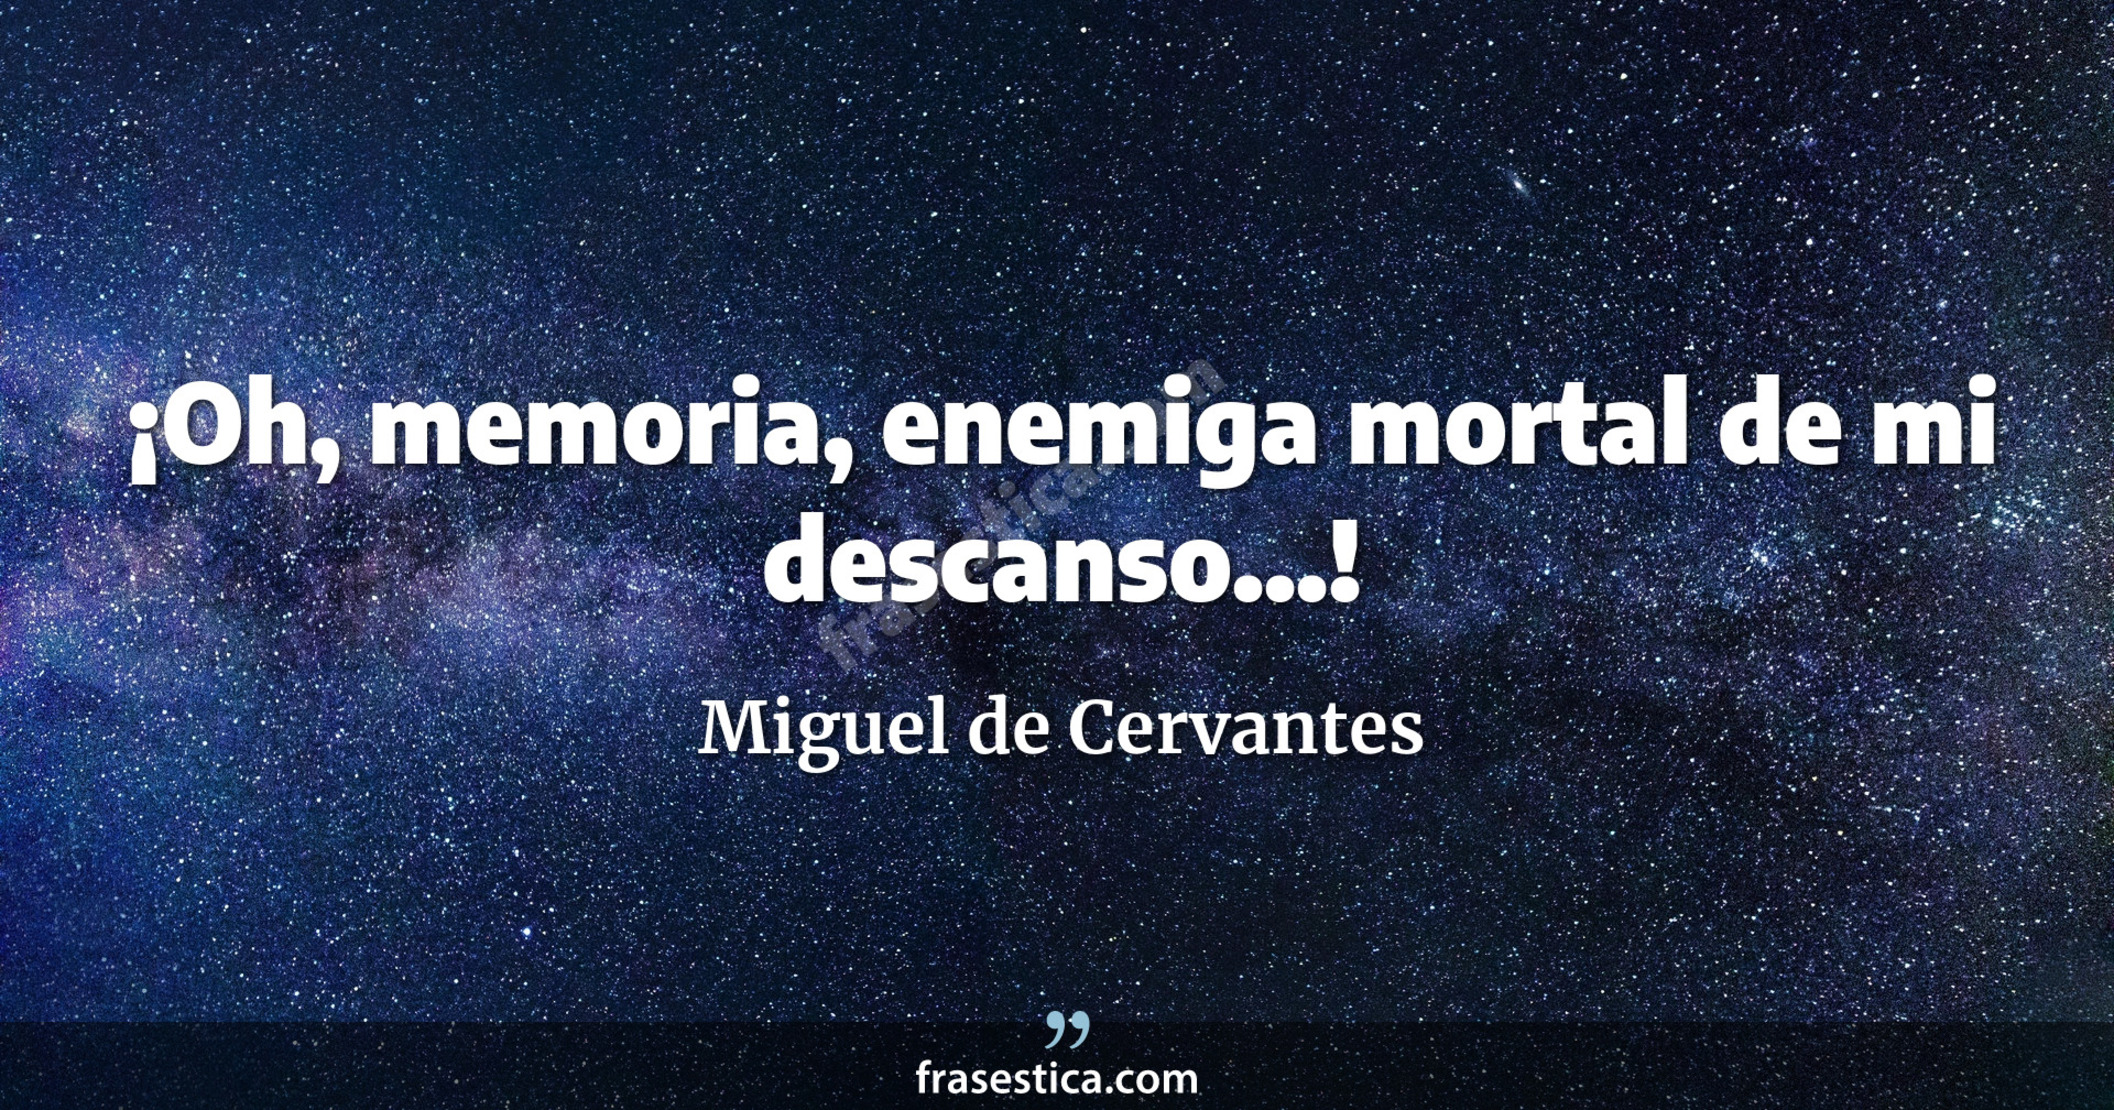 ¡Oh, memoria, enemiga mortal de mi descanso...! - Miguel de Cervantes